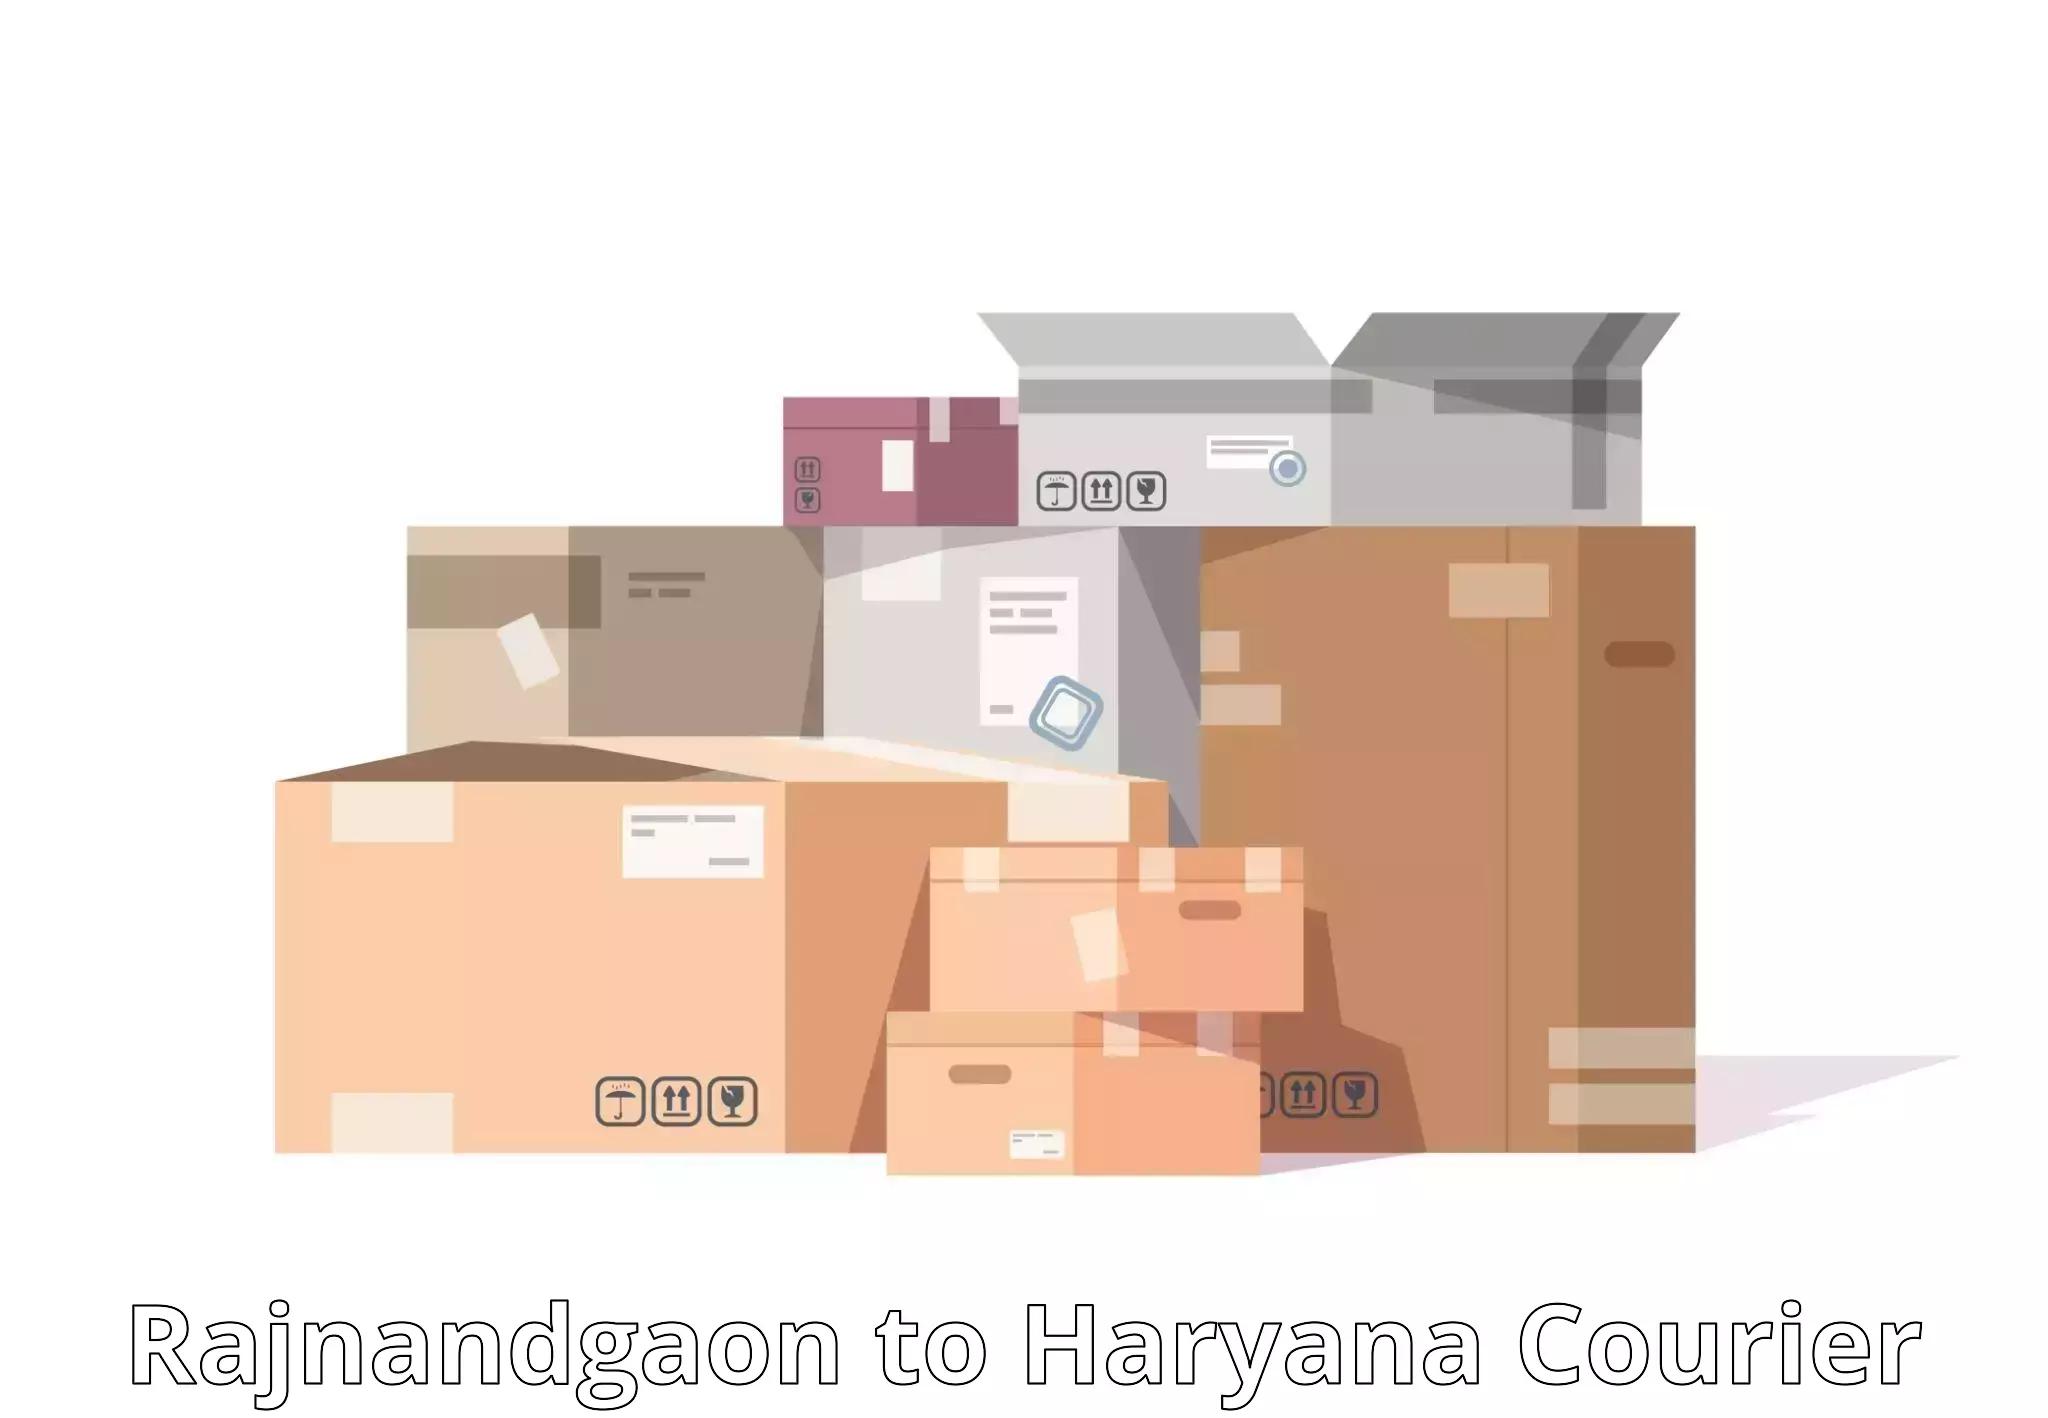 Discounted shipping Rajnandgaon to Jhajjar